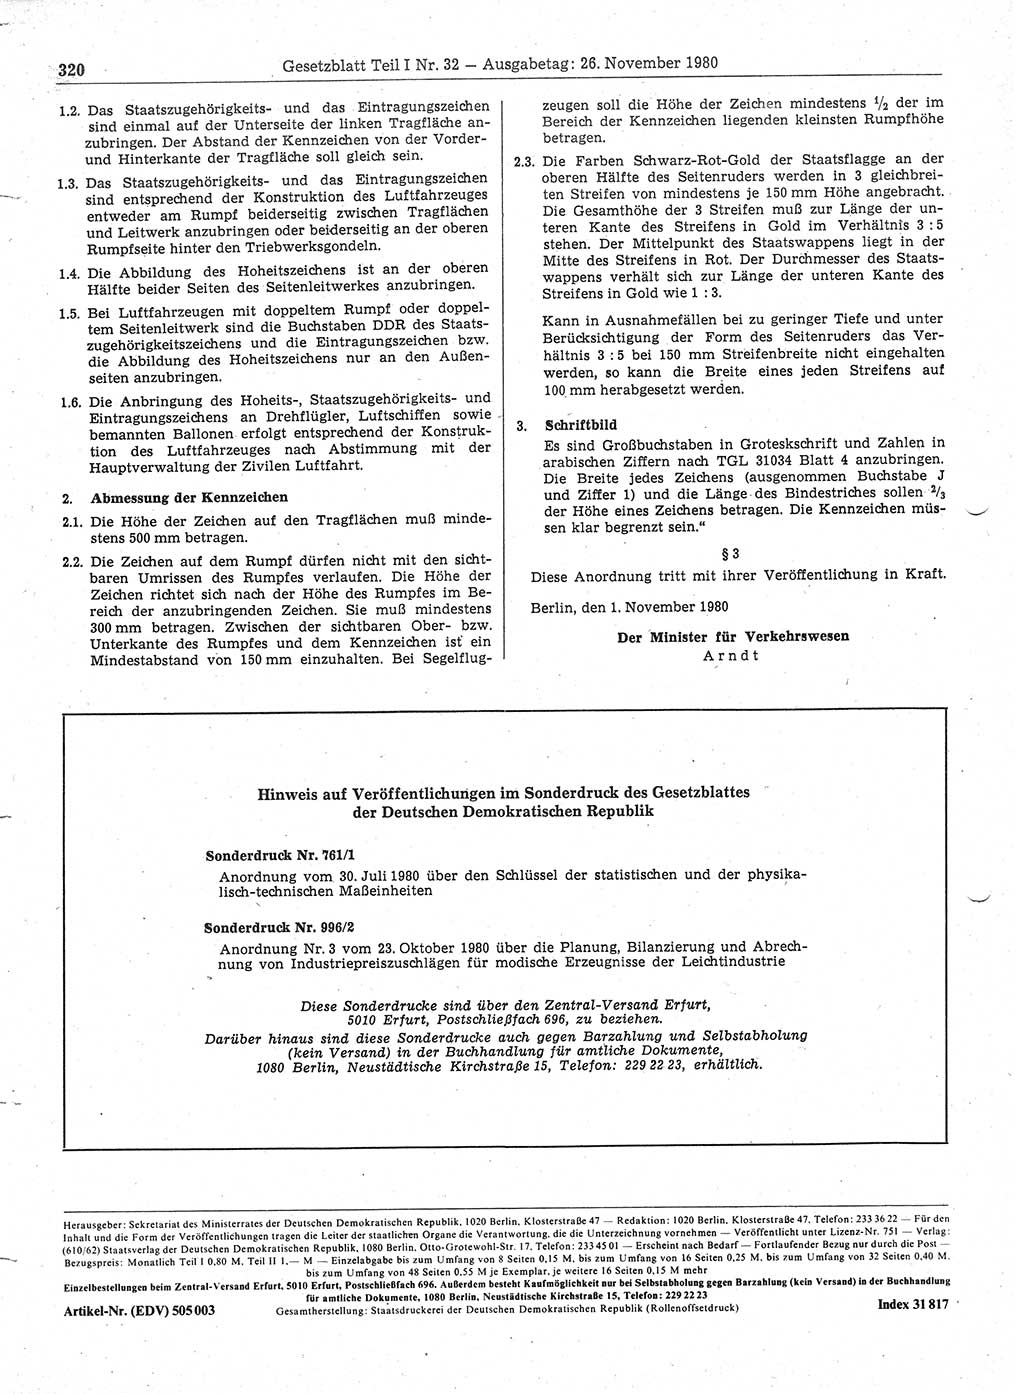 Gesetzblatt (GBl.) der Deutschen Demokratischen Republik (DDR) Teil Ⅰ 1980, Seite 320 (GBl. DDR Ⅰ 1980, S. 320)